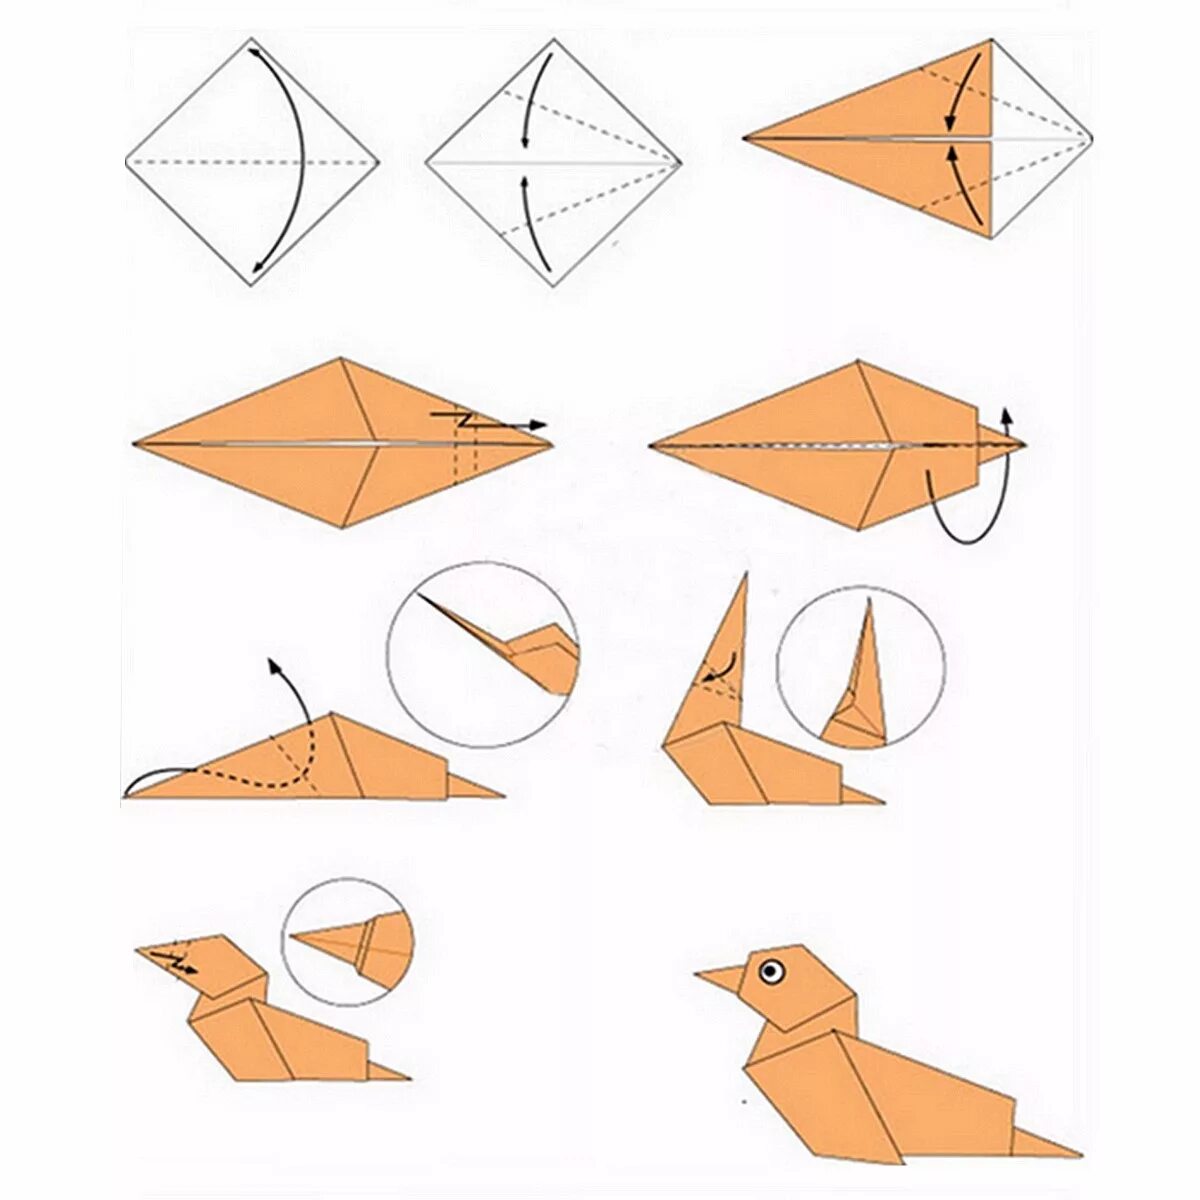 Схема как делать оригами. Как сложить оригами из бумаги для начинающих. Схемы оригами легкие пошагово. Оригами из бумаги для начинающих животные пошагово схемы.